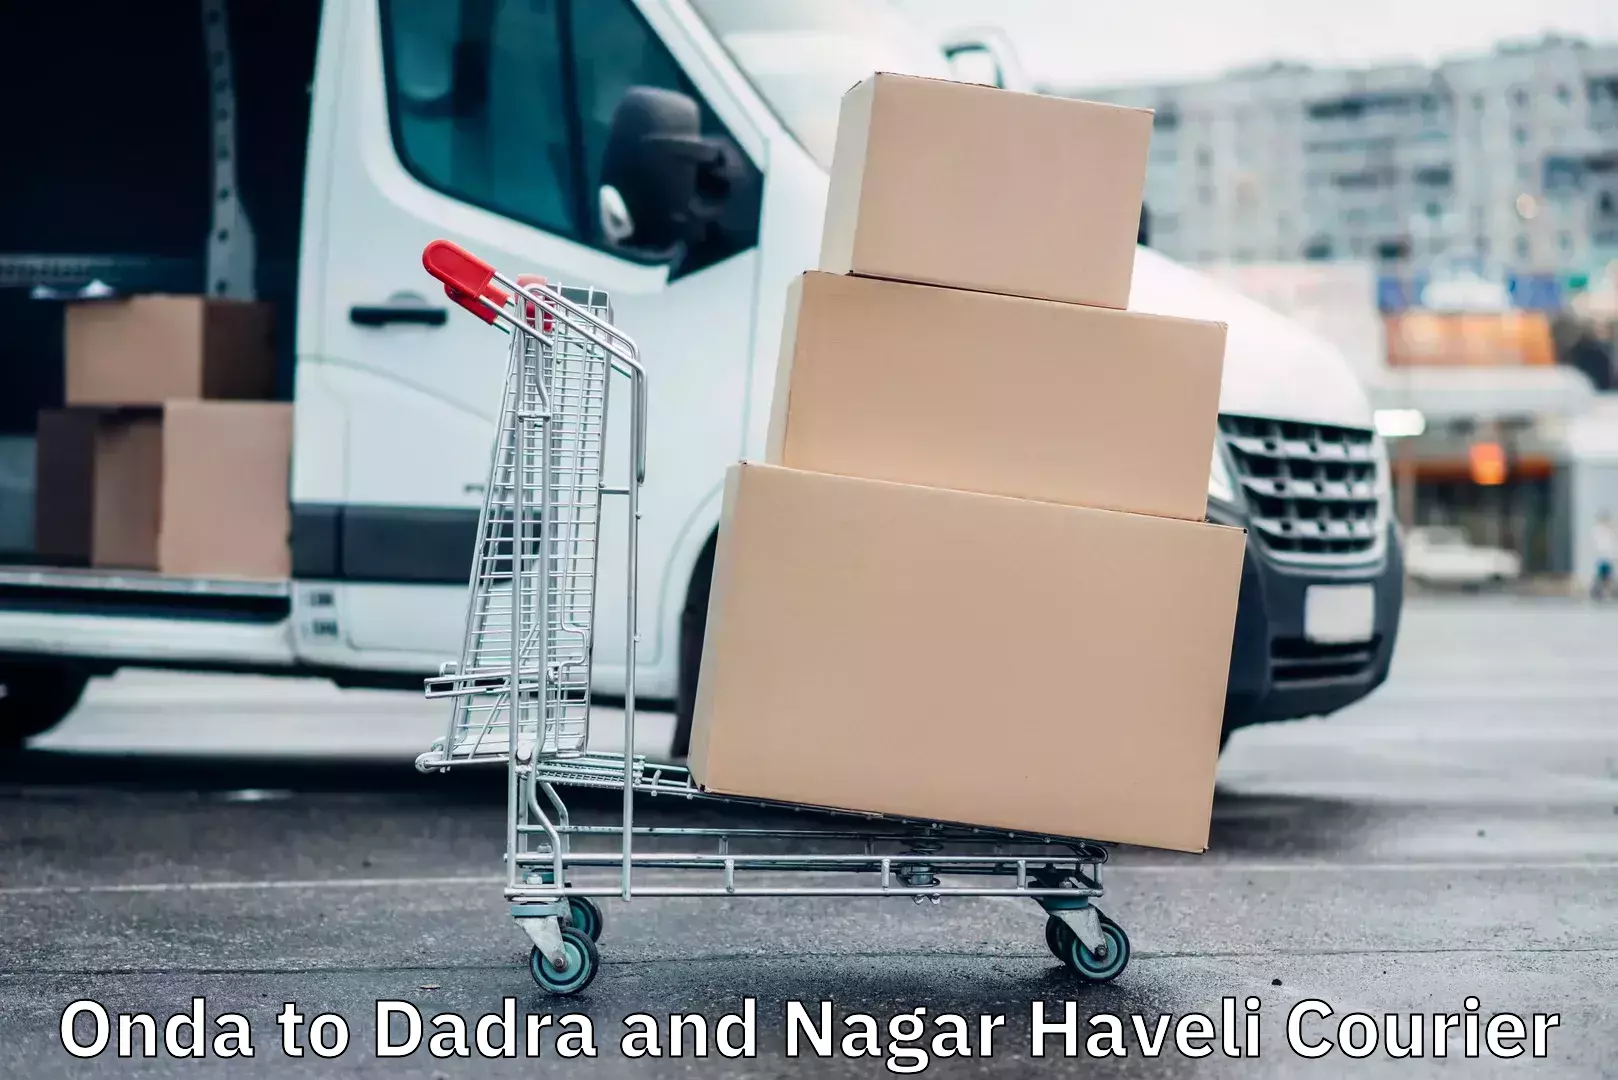 Global shipping networks Onda to Dadra and Nagar Haveli